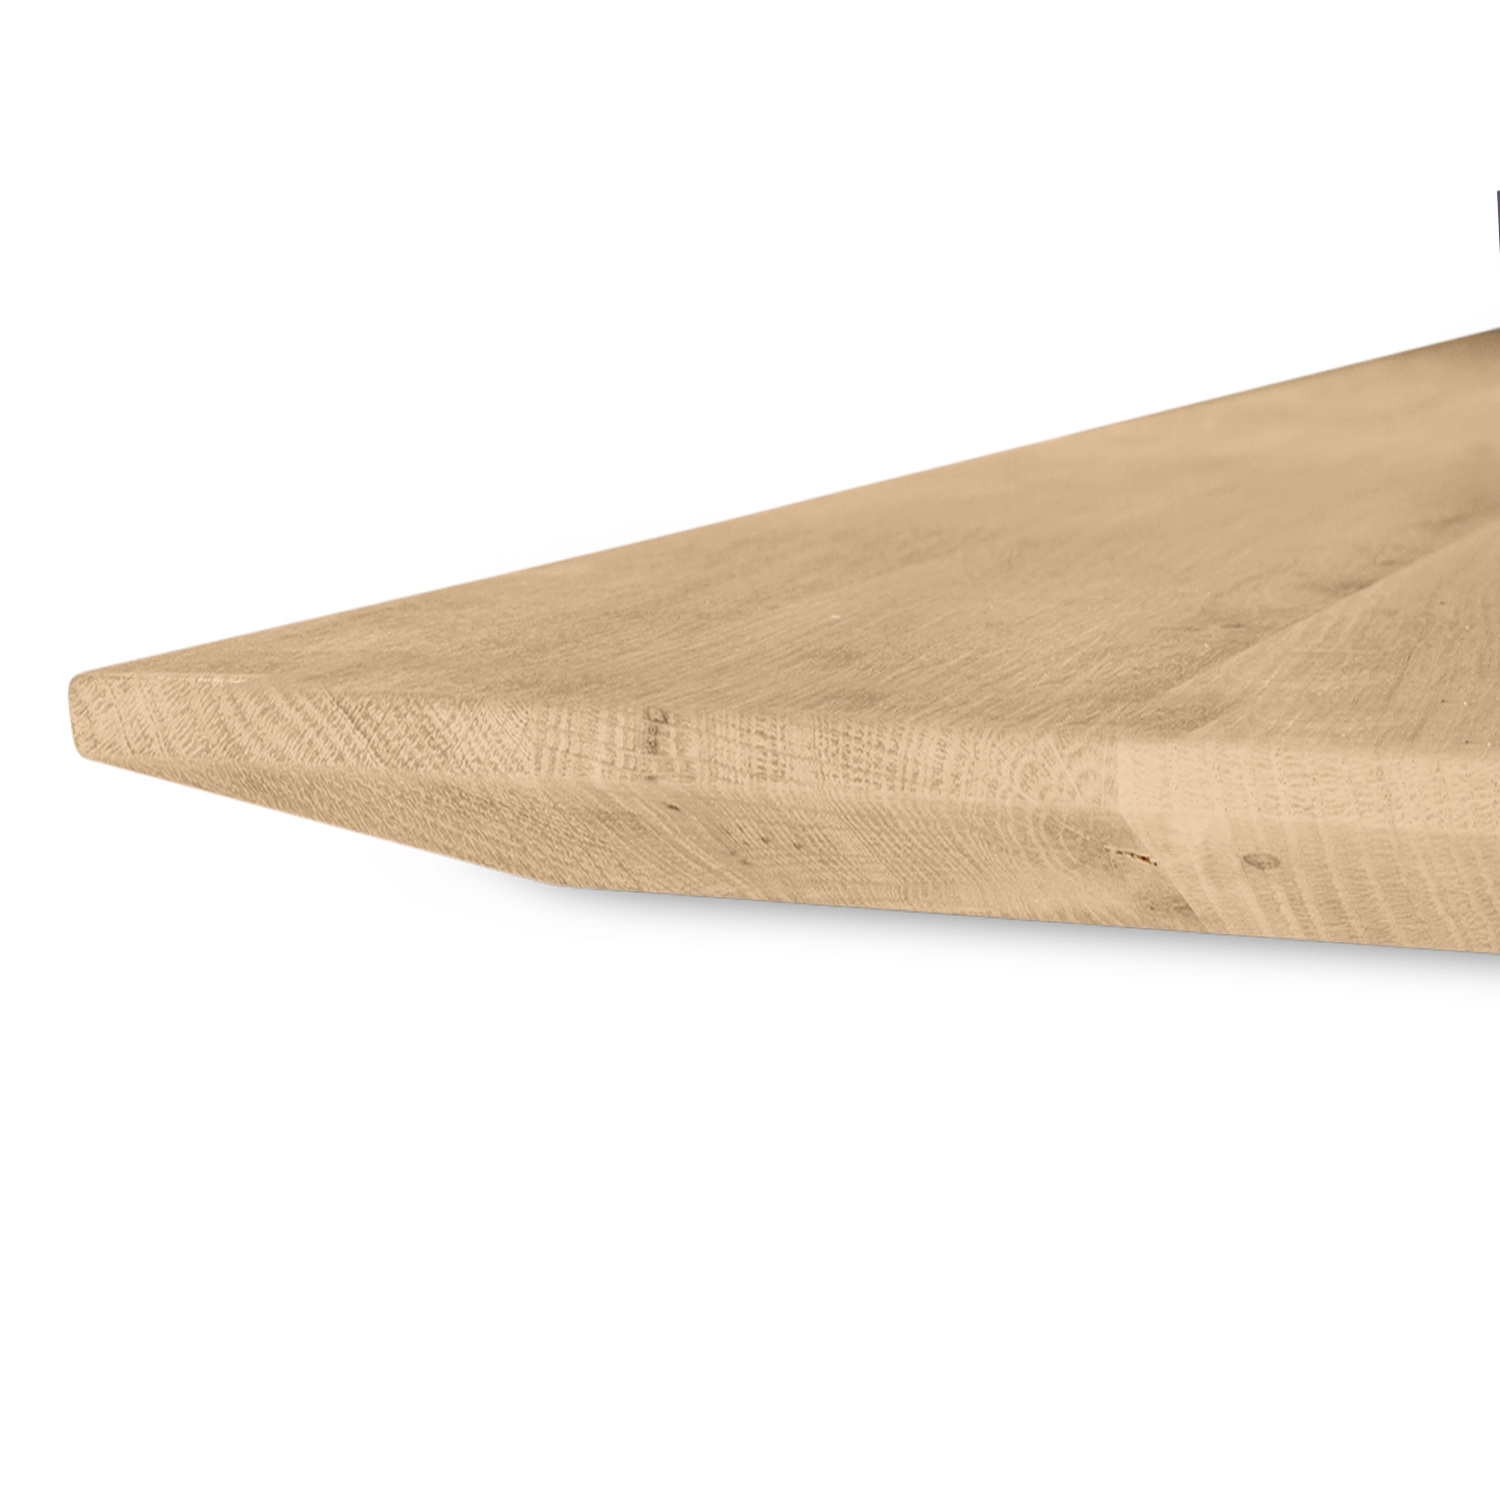  Tischplatte Wildeiche - Schweizer Kante - nach Maß - 4 cm dick (1-Schicht) - XXL Lamellen (14-20 cm breit) - Asteiche (rustikal) - verleimt & künstlich getrocknet (HF 8-12%) - 40-117x80-247 cm